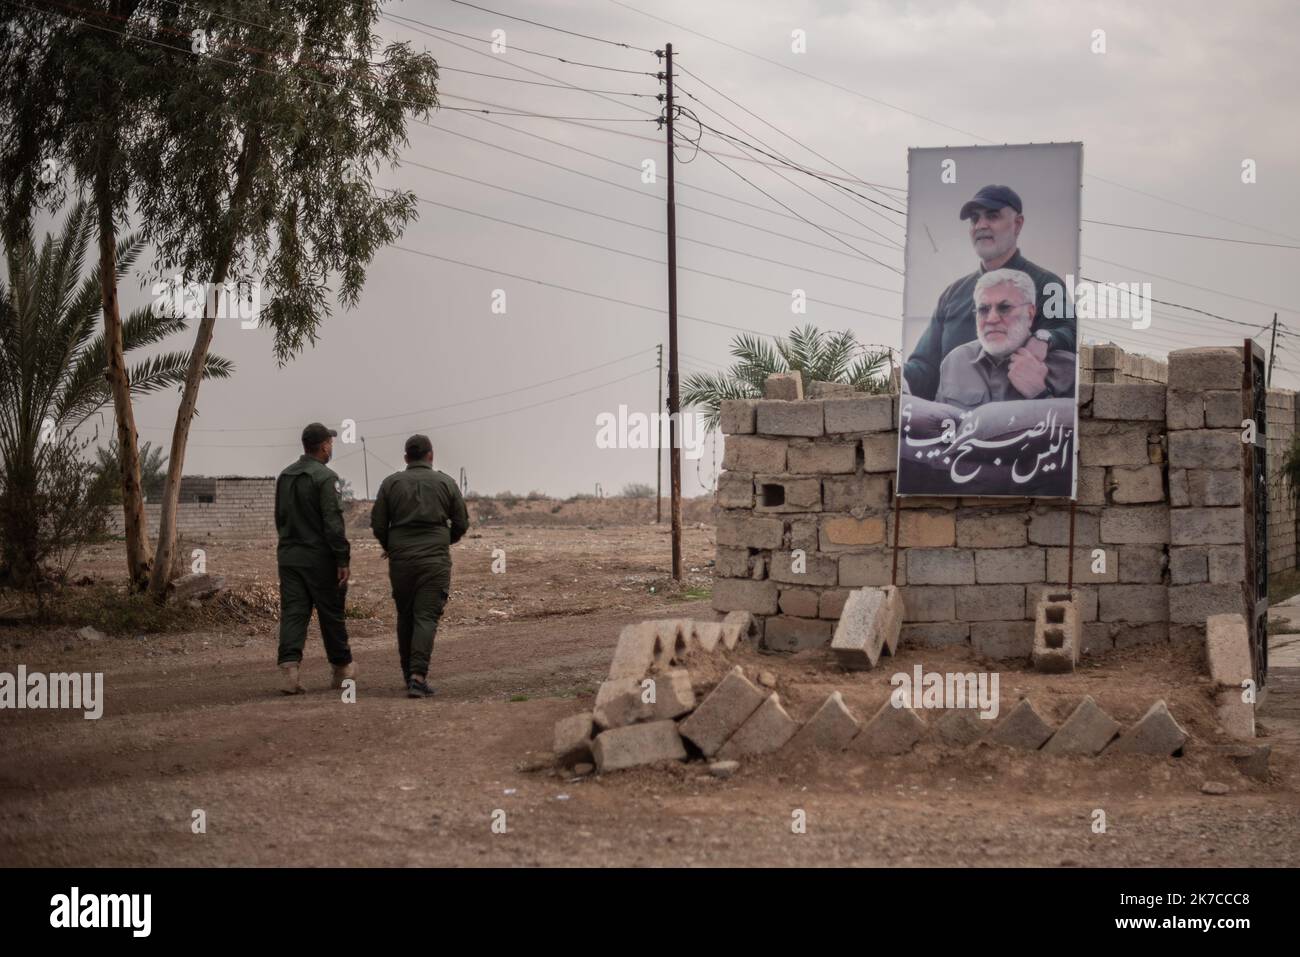 ©Chloe Sharrock / Le Pictorium/MAXPPP - Chloe Sharrock / Le Pictorium - 23/12/2020 - Irak / Samara - A une semaine de la commemoration de l'assassinat des leaders Iraniens Qassem Soleimani et Al-Mohandis, un entrainement est organise a` la base militaire de la Brigade 43 des Hachd al-Chaabi. La Brigade 43 est composee de paramilitaires du mouvement Asa'ib Ahl al-Haq. / 23/12/2020 - Iraq / Samara - Stock Photo